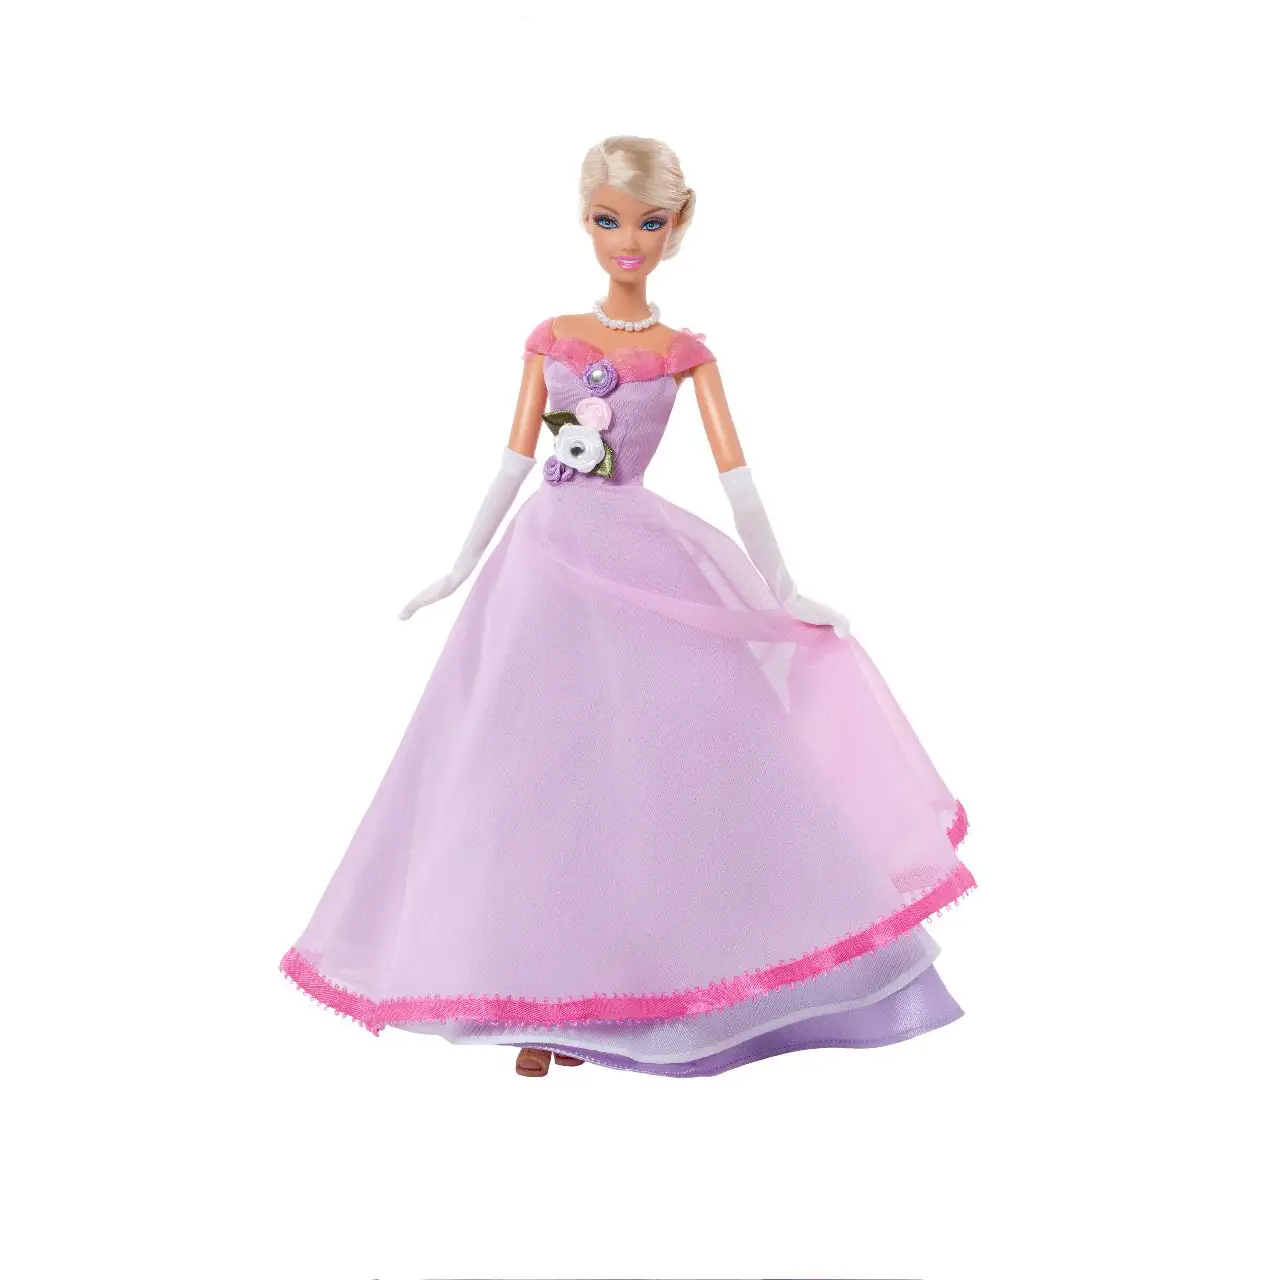 Barbie para colorear, pintar e imprimir